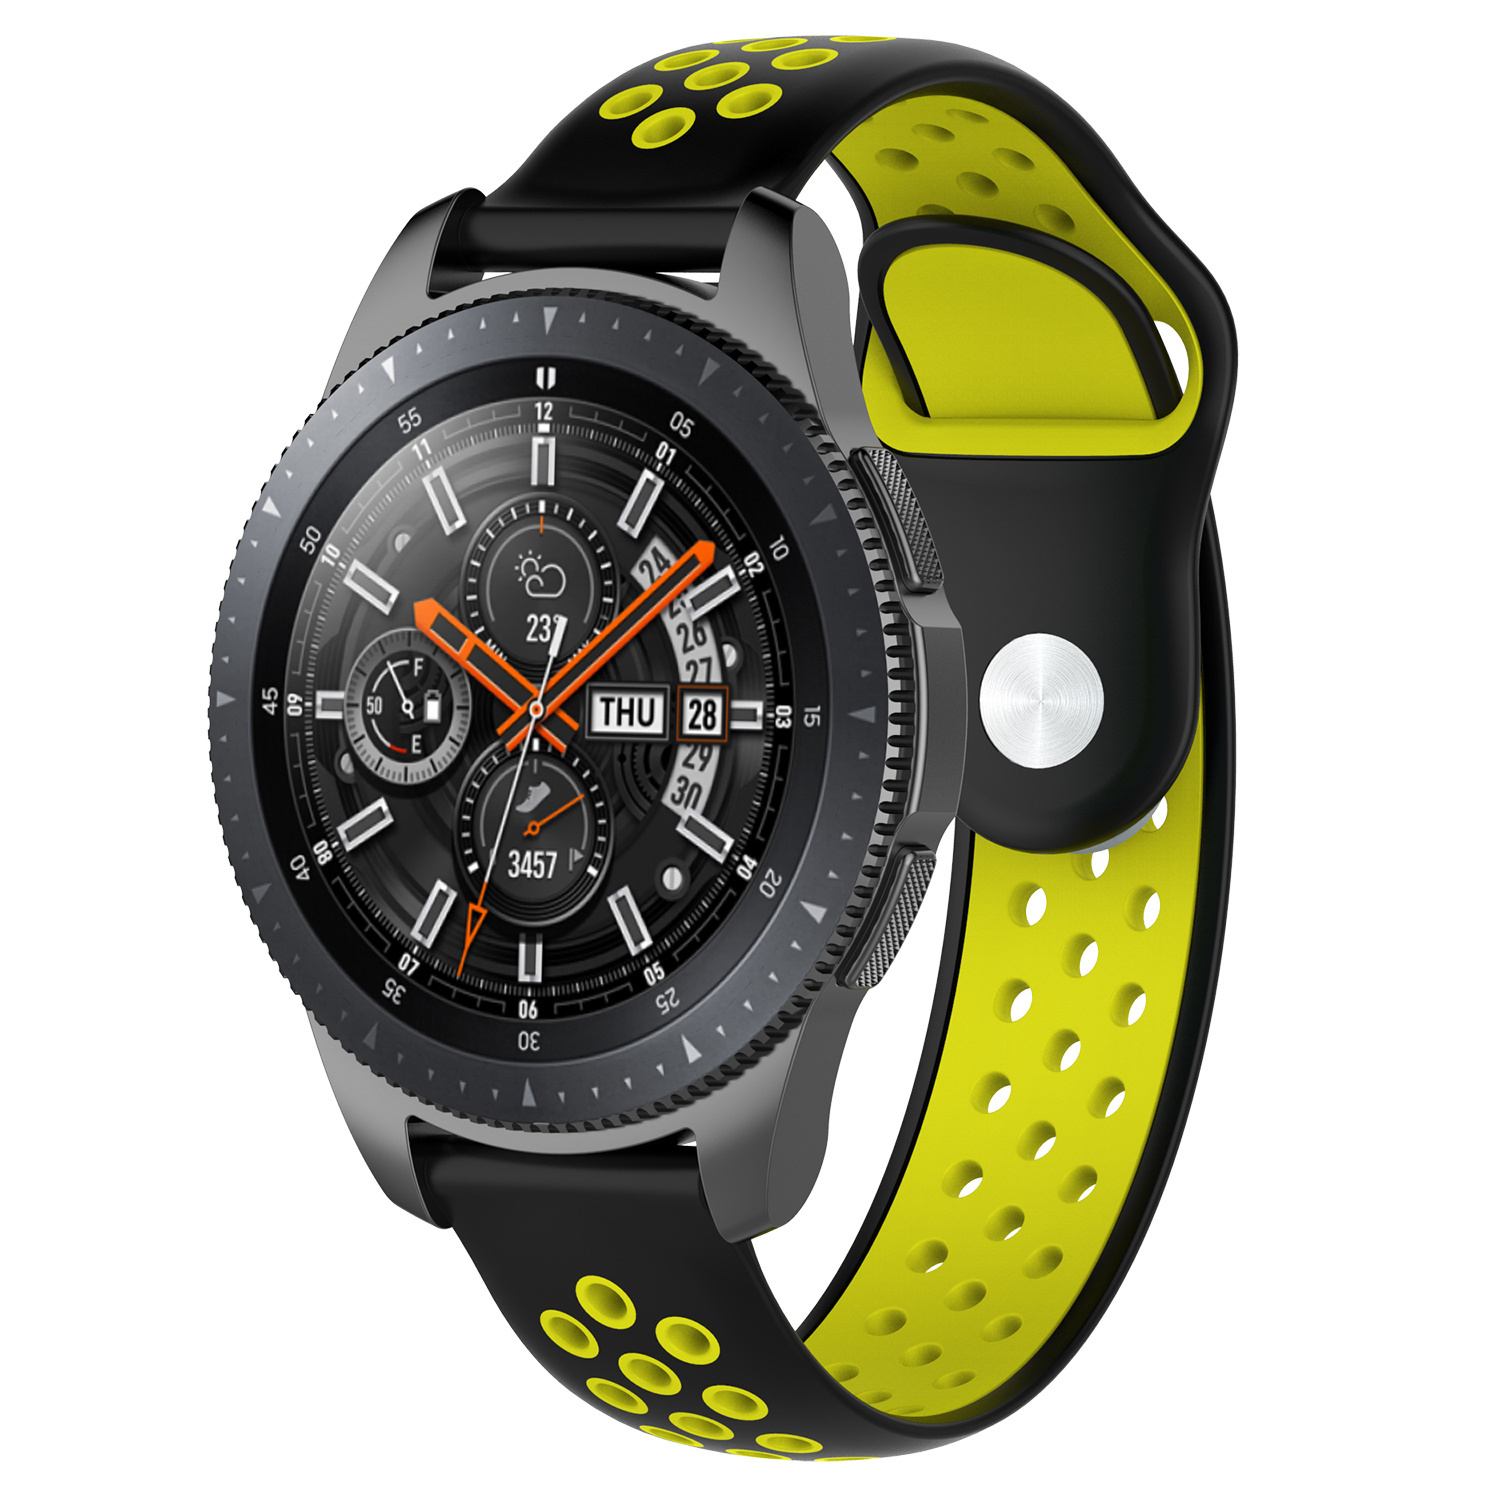 Samsung Galaxy Watch dupla sport szalag - fekete-sárga